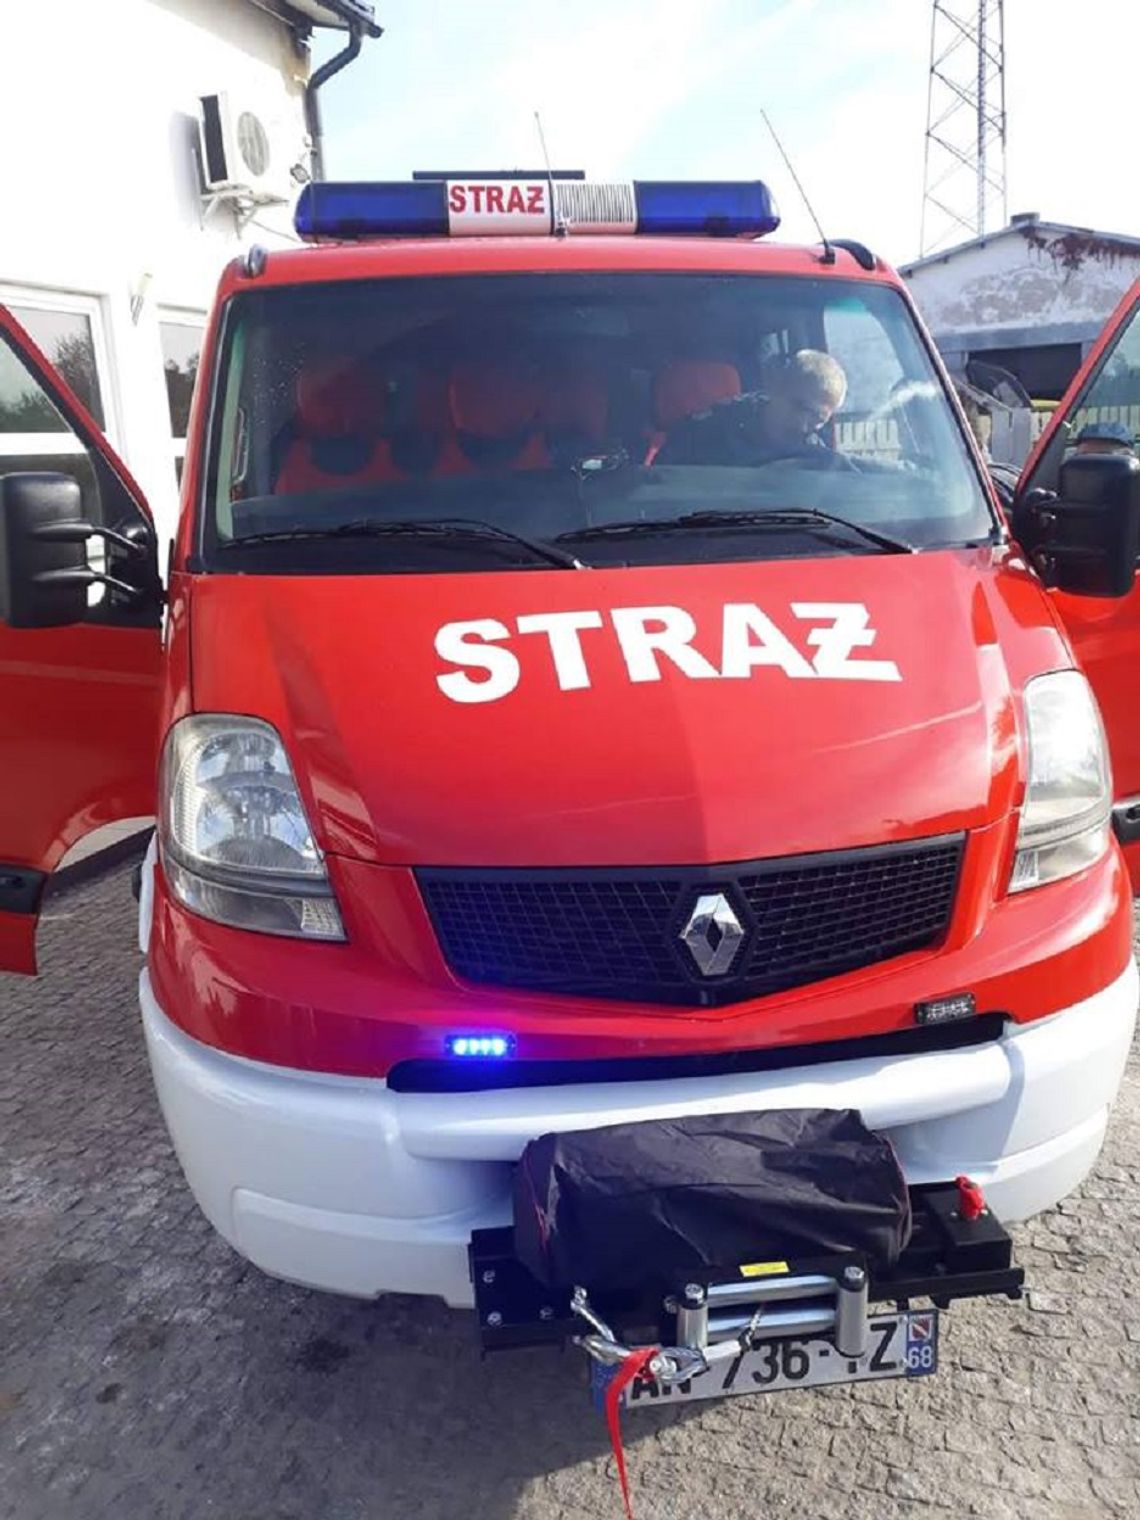 Strażacy z Werbkowic mają nowy wóz